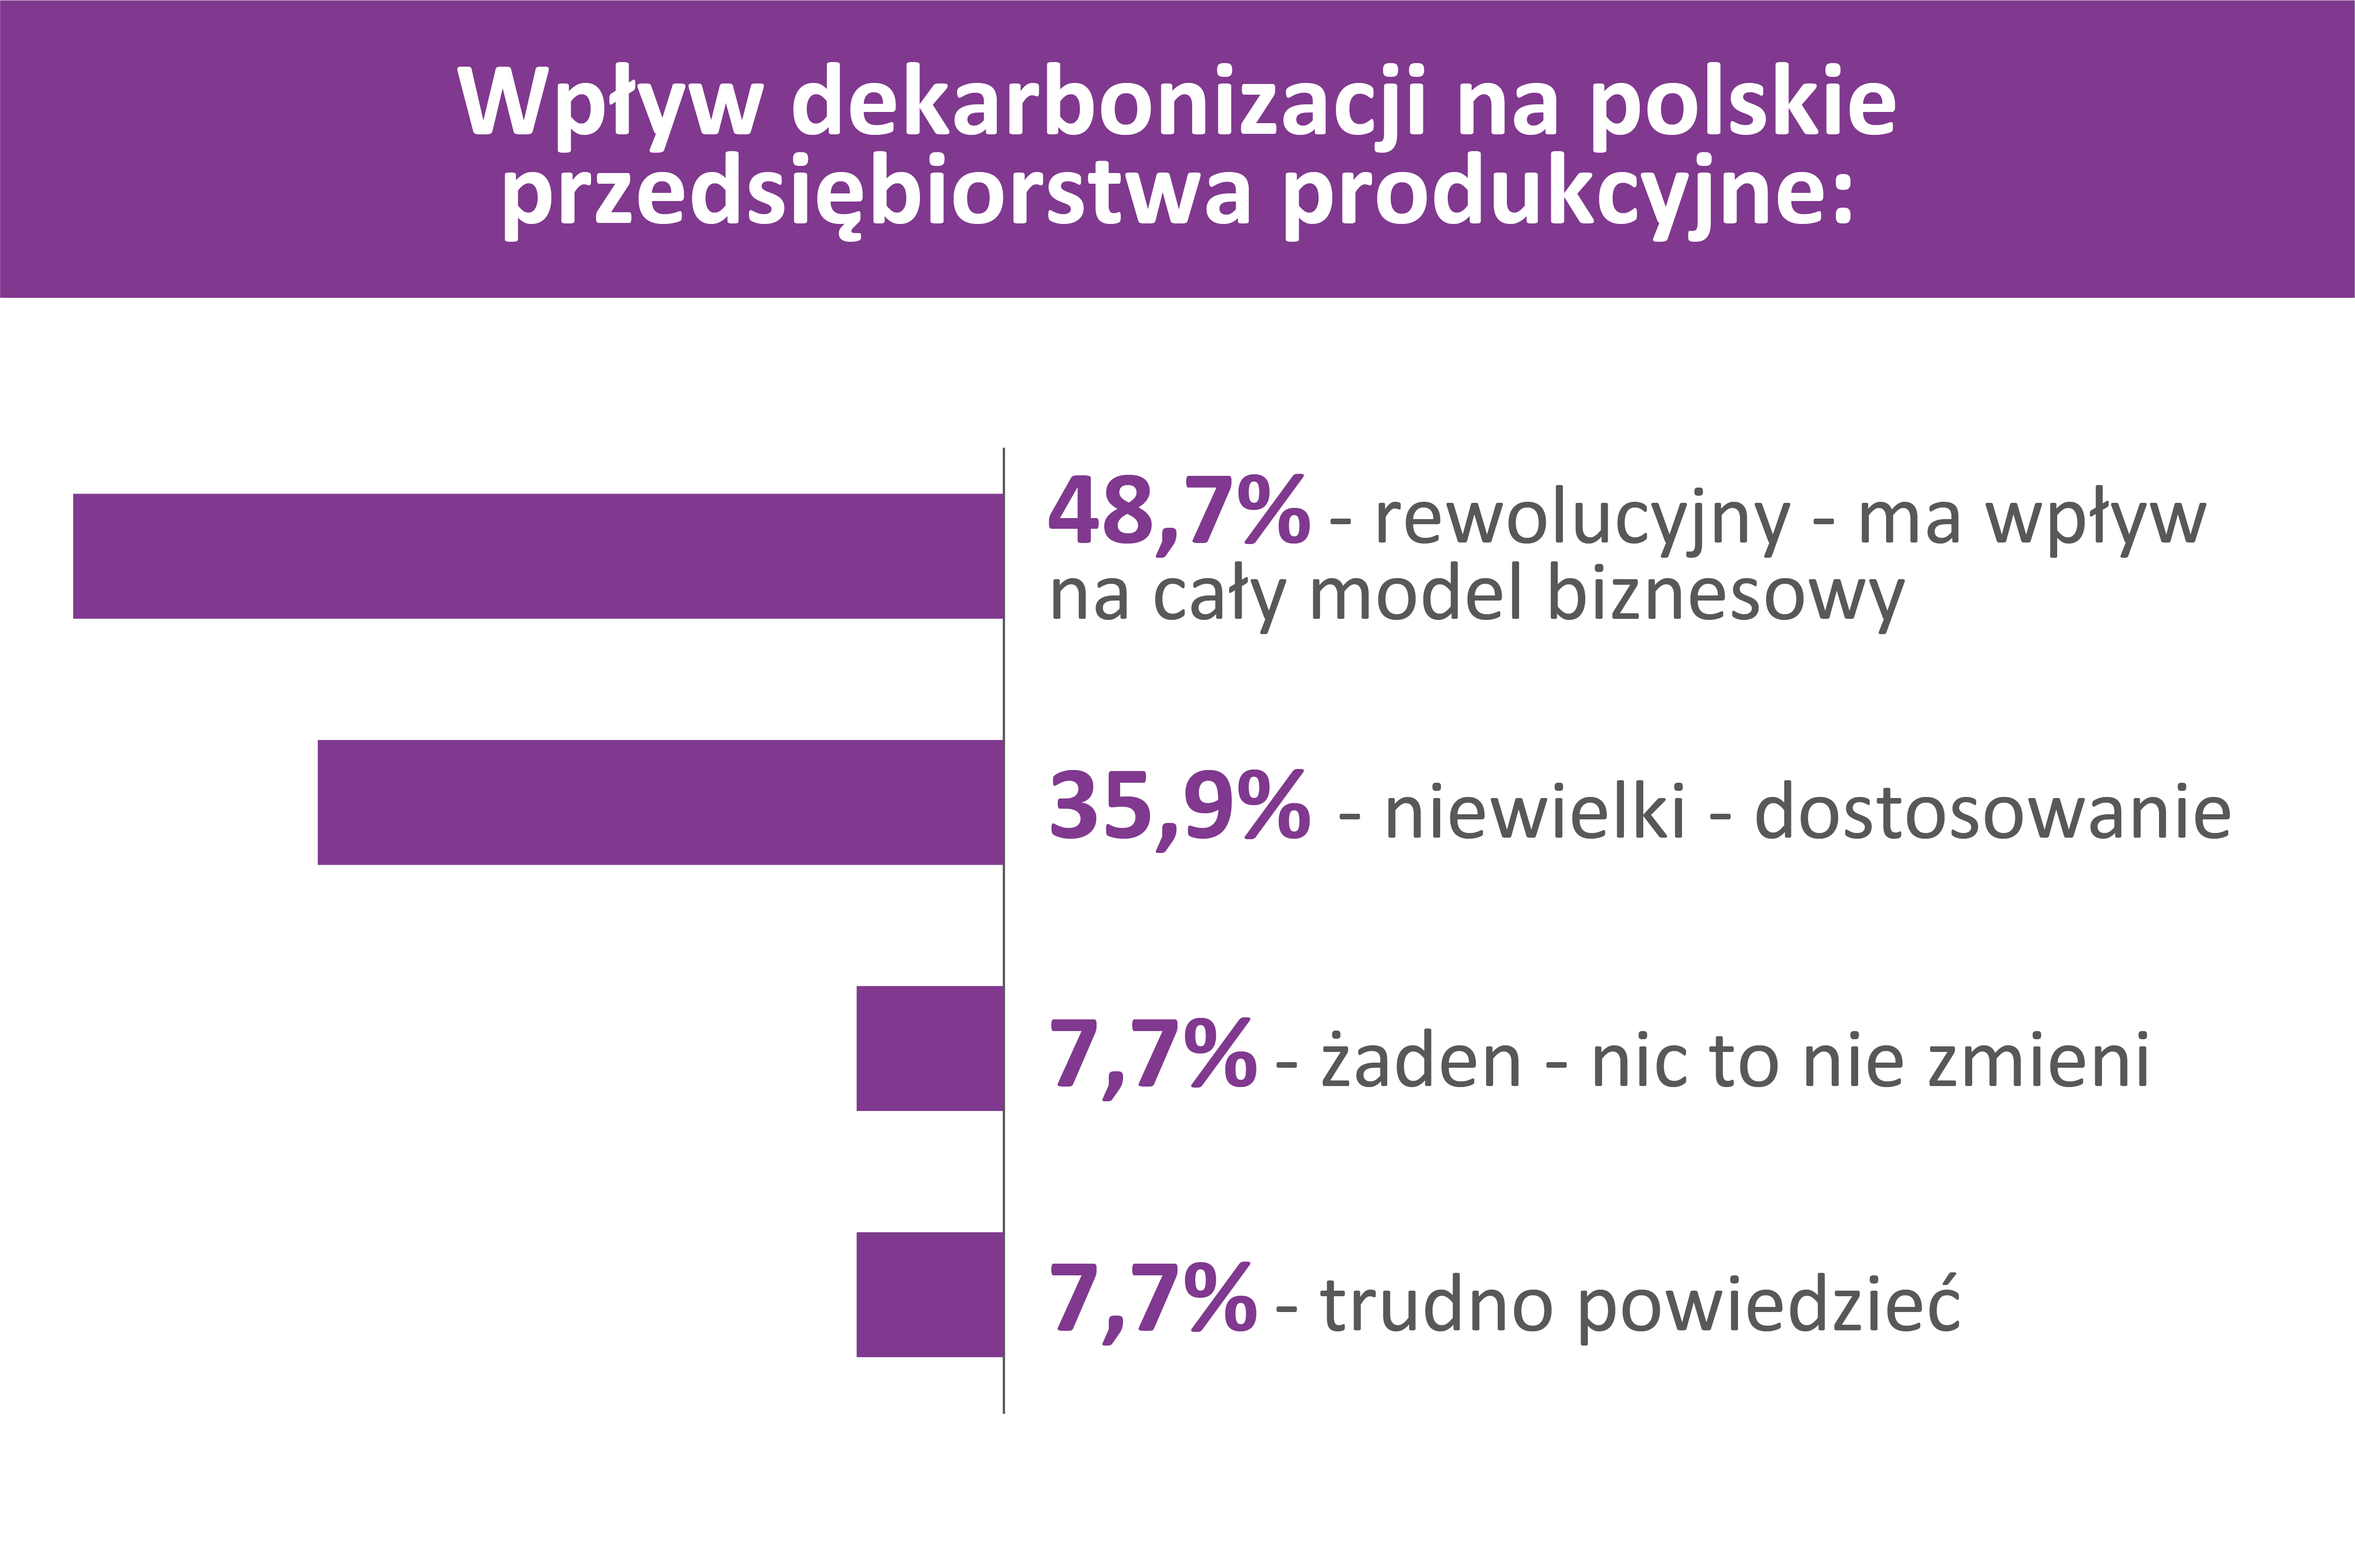 dyrektywa_mcp_polskie_firmy_infografika_czesc2_duon